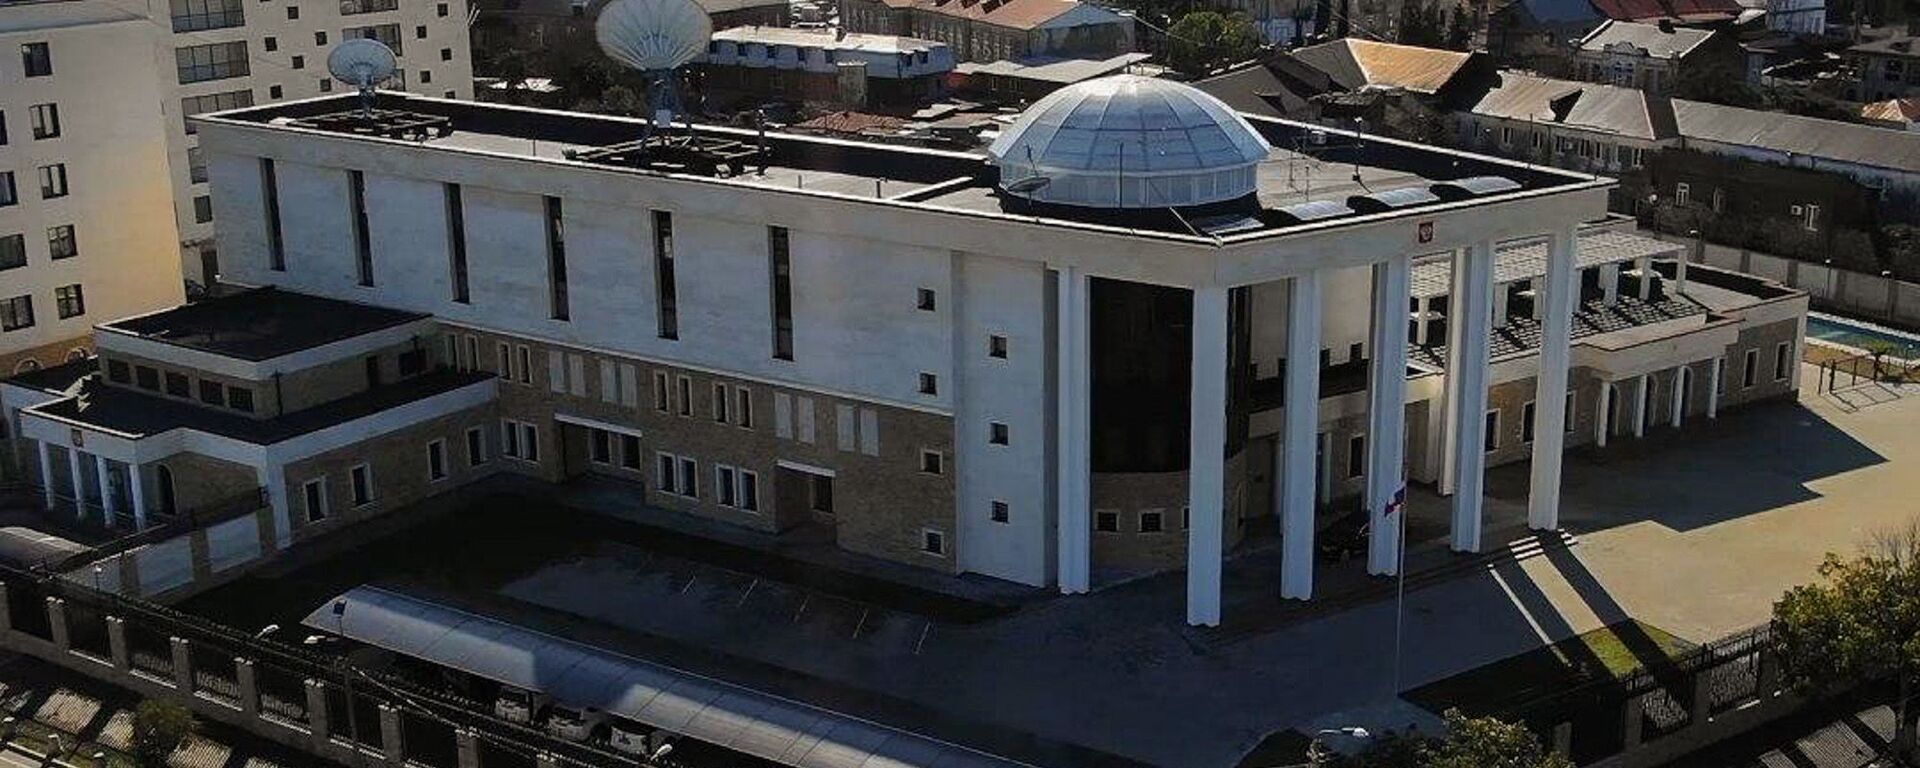 Посольство РФ - Sputnik Абхазия, 1920, 15.06.2021